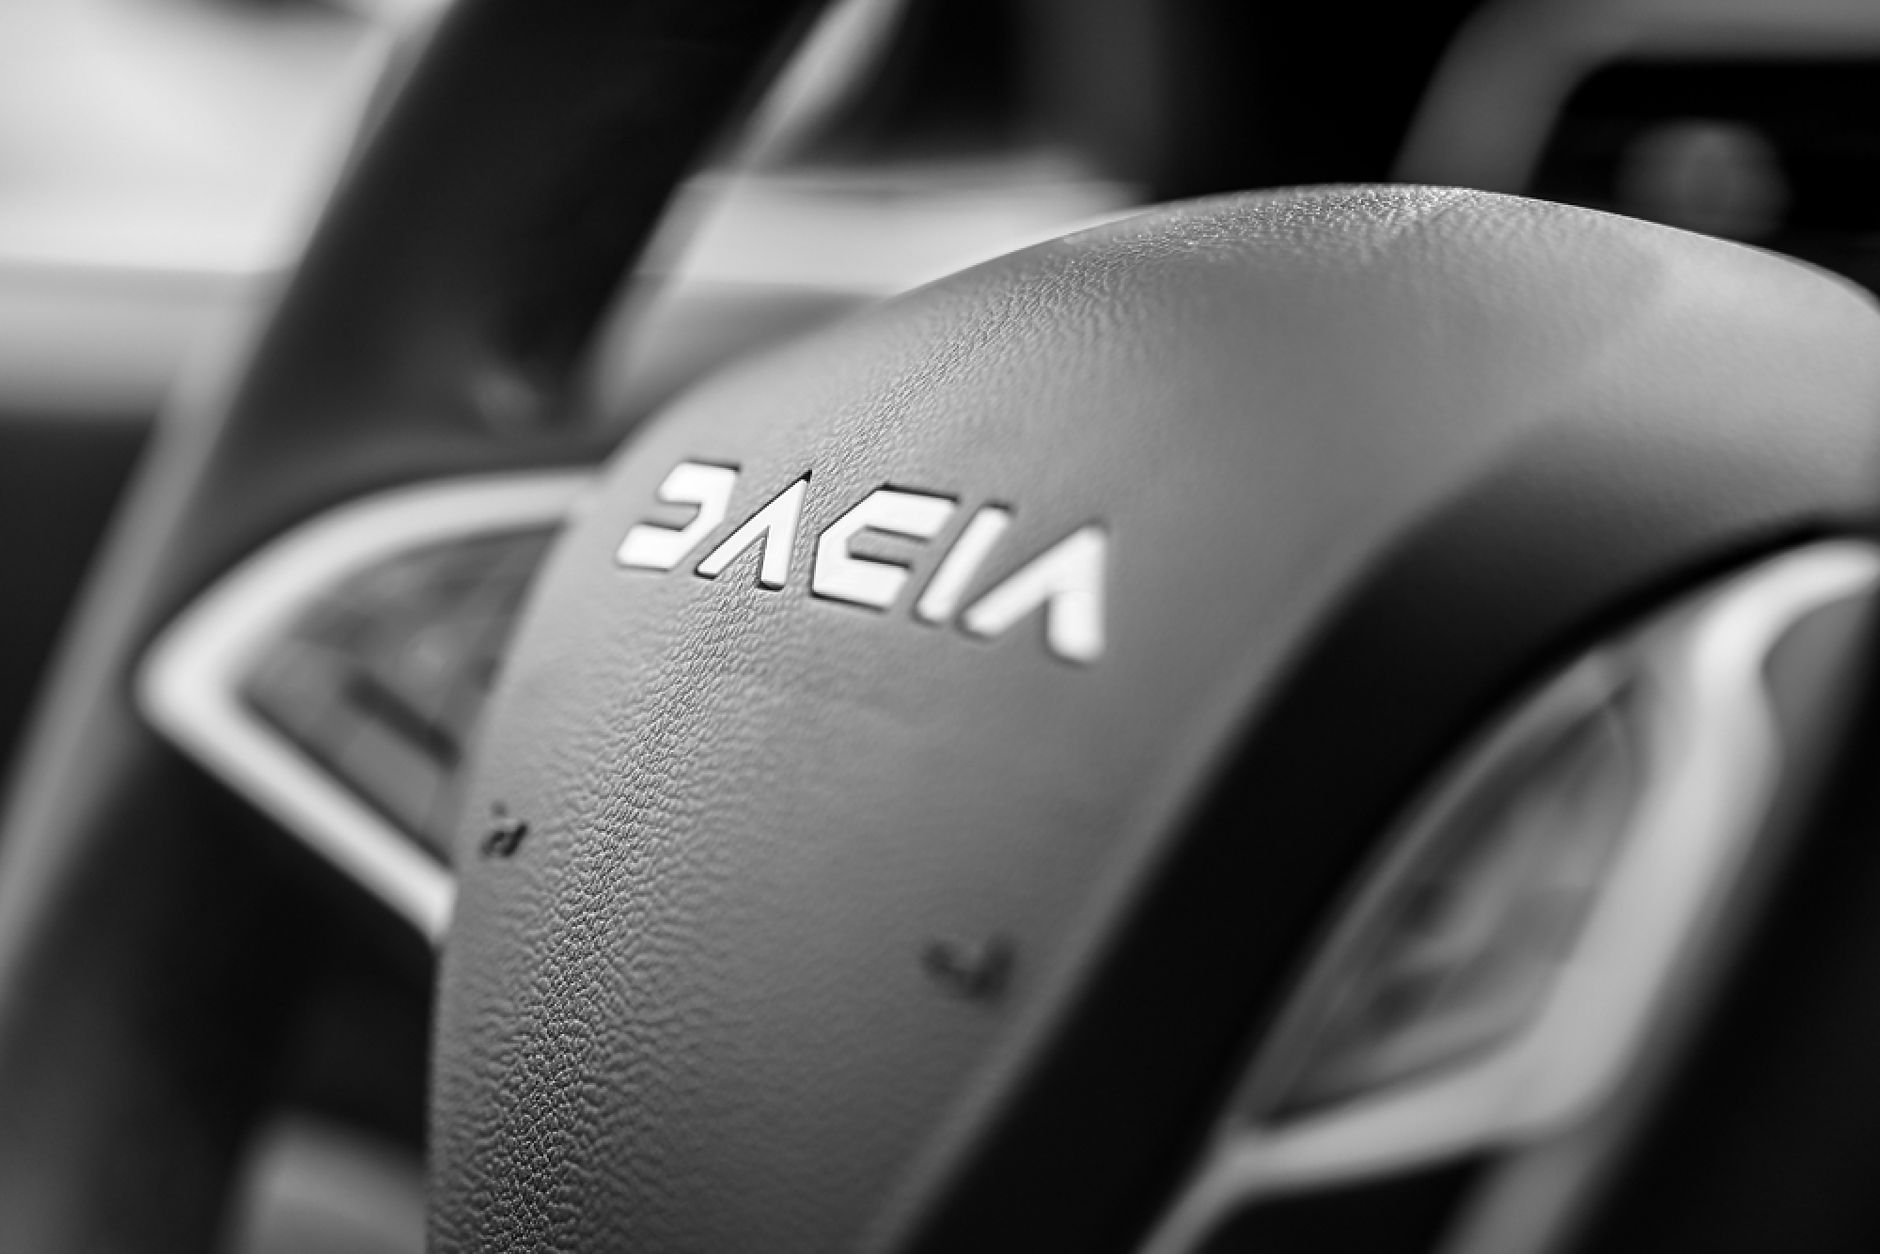 Dacia  отчете  близо 14 %  ръст на продажбите  на автомобили в  Европа